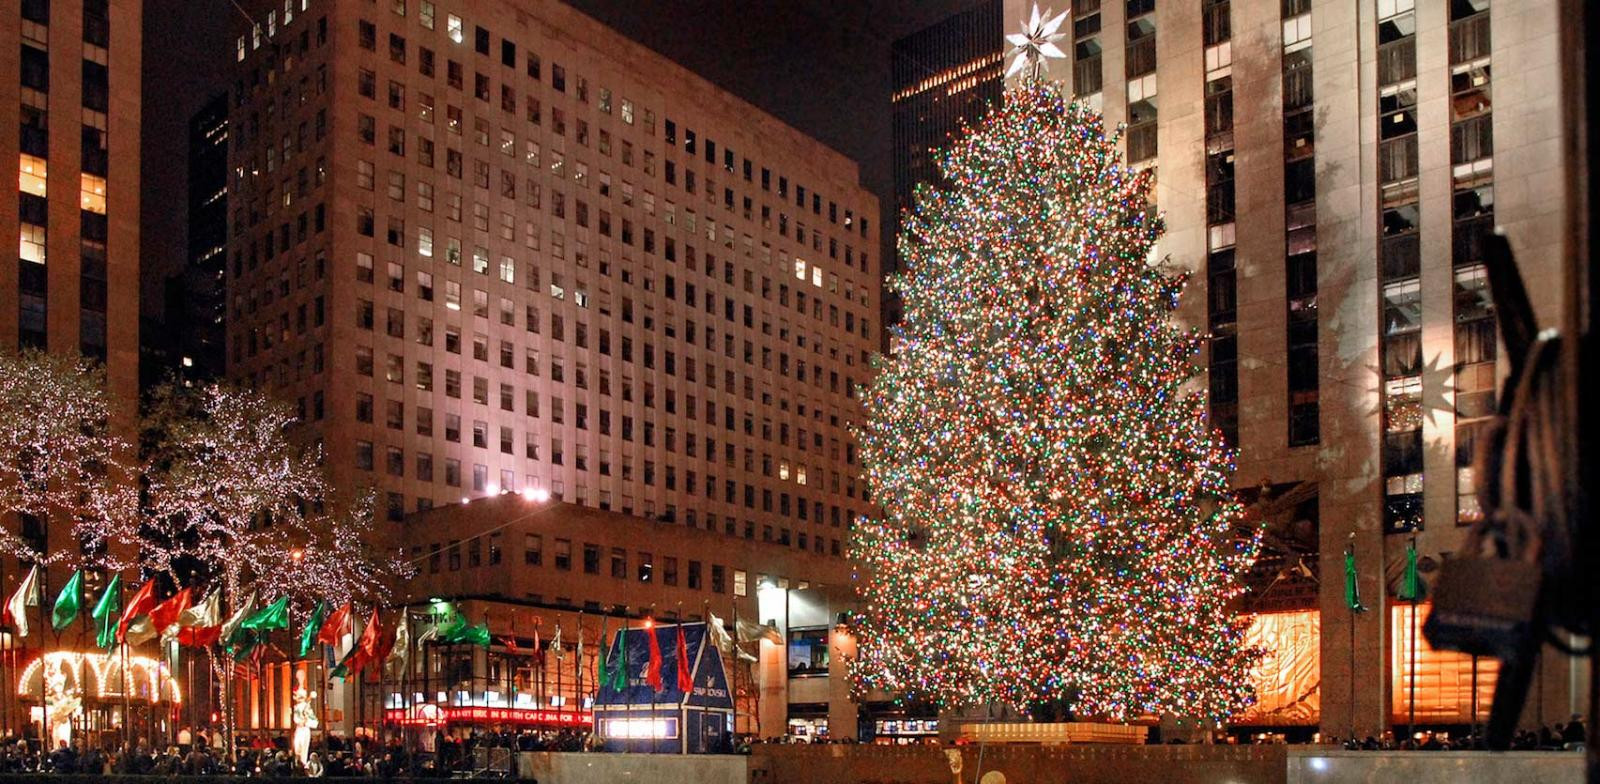 Rockefeller Christmas Tree Lighting
 Rockefeller Center Christmas Tree